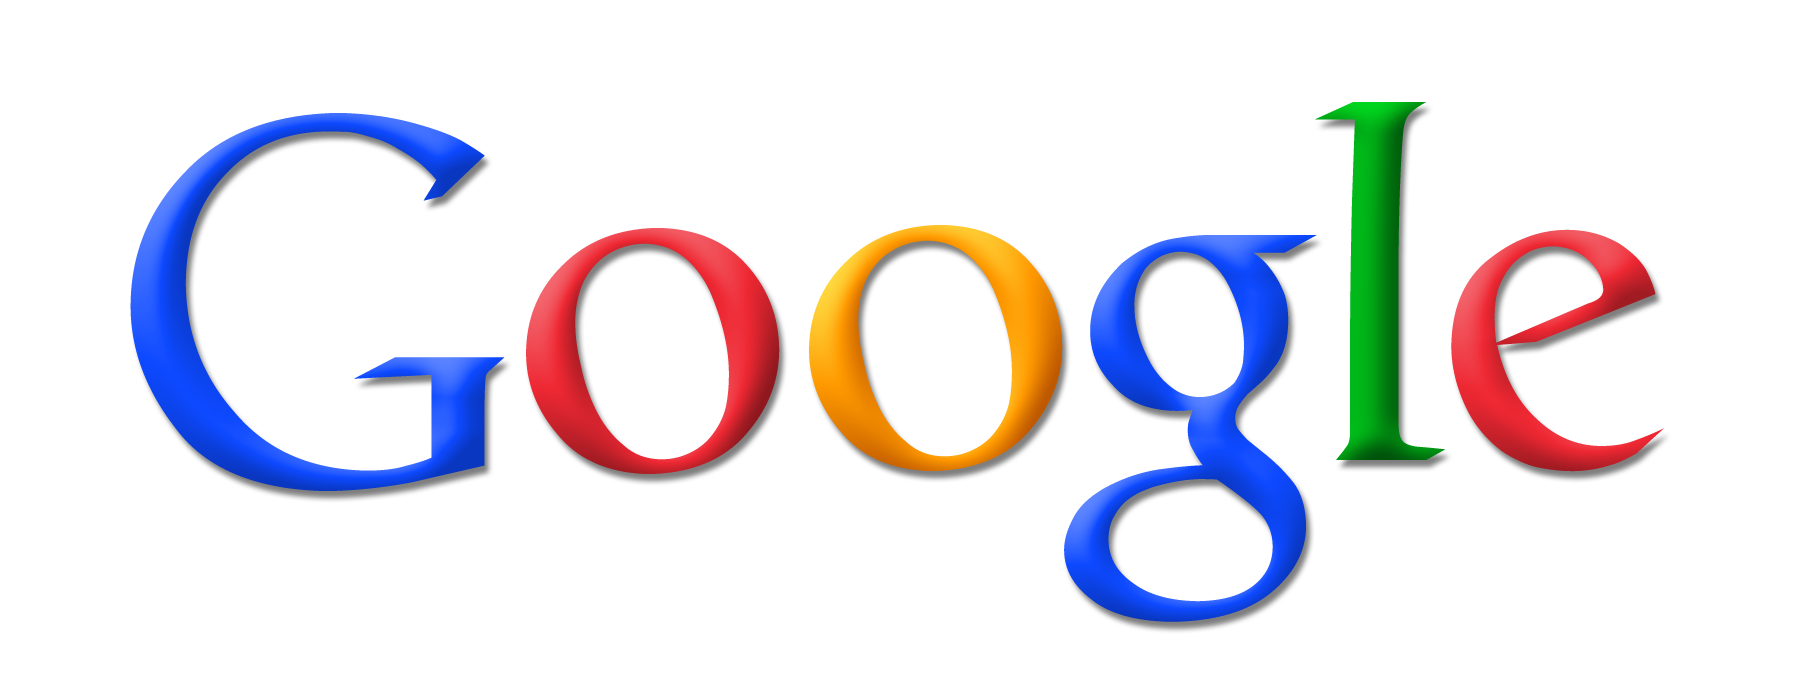 جوجل تطرح ميزة التصفح اللانهائي عبر الهاتف المحمول